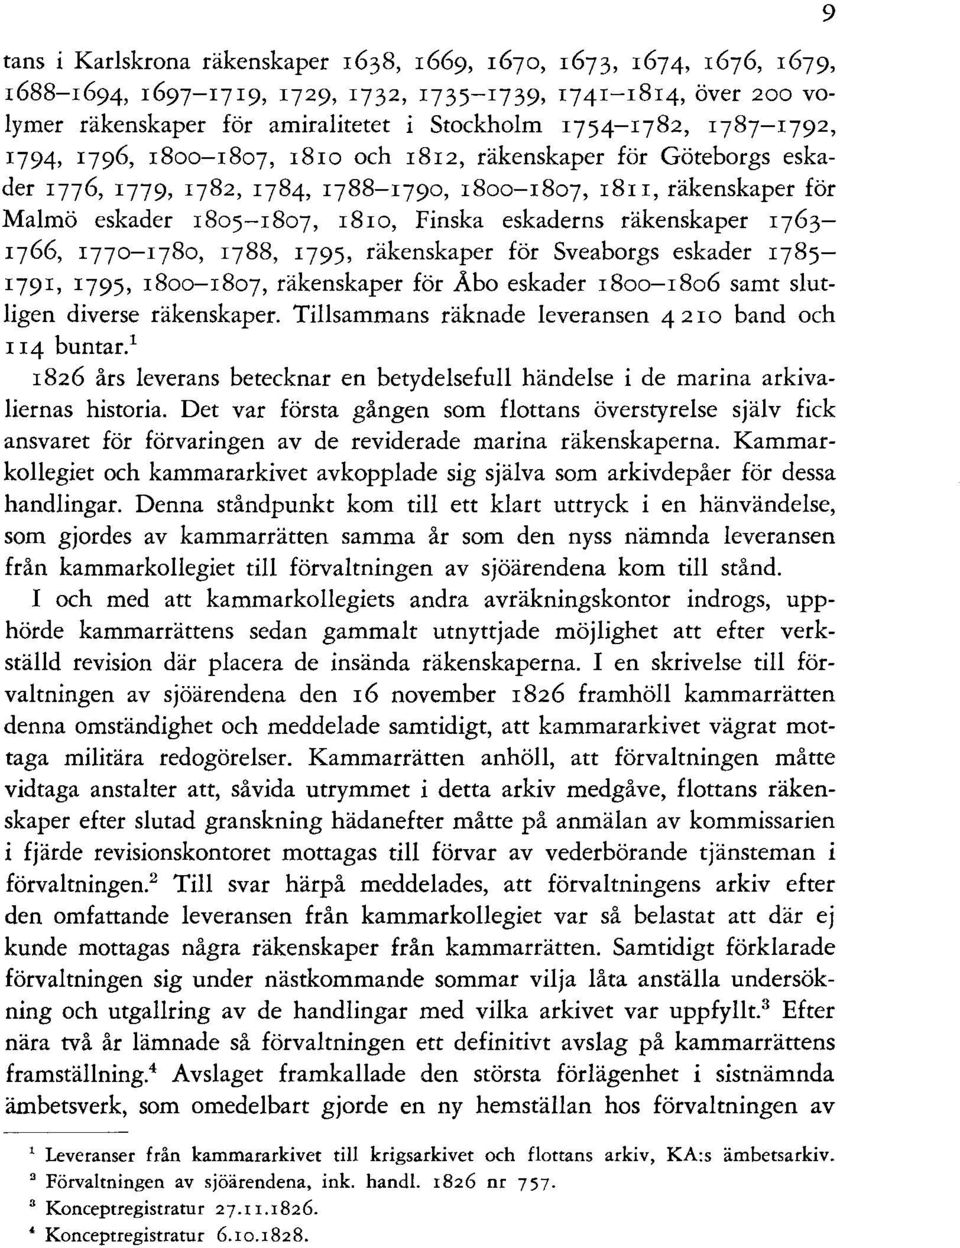 räkenskaper 1763- q66, 177o-q8o, q88, 1795, räkenskaper för Sveaborgs eskader 1785-1791, 1795, 18oo-1807, räkenskaper för Abo eskader 18oo-18o6 samt slutligen diverse räkenskaper.